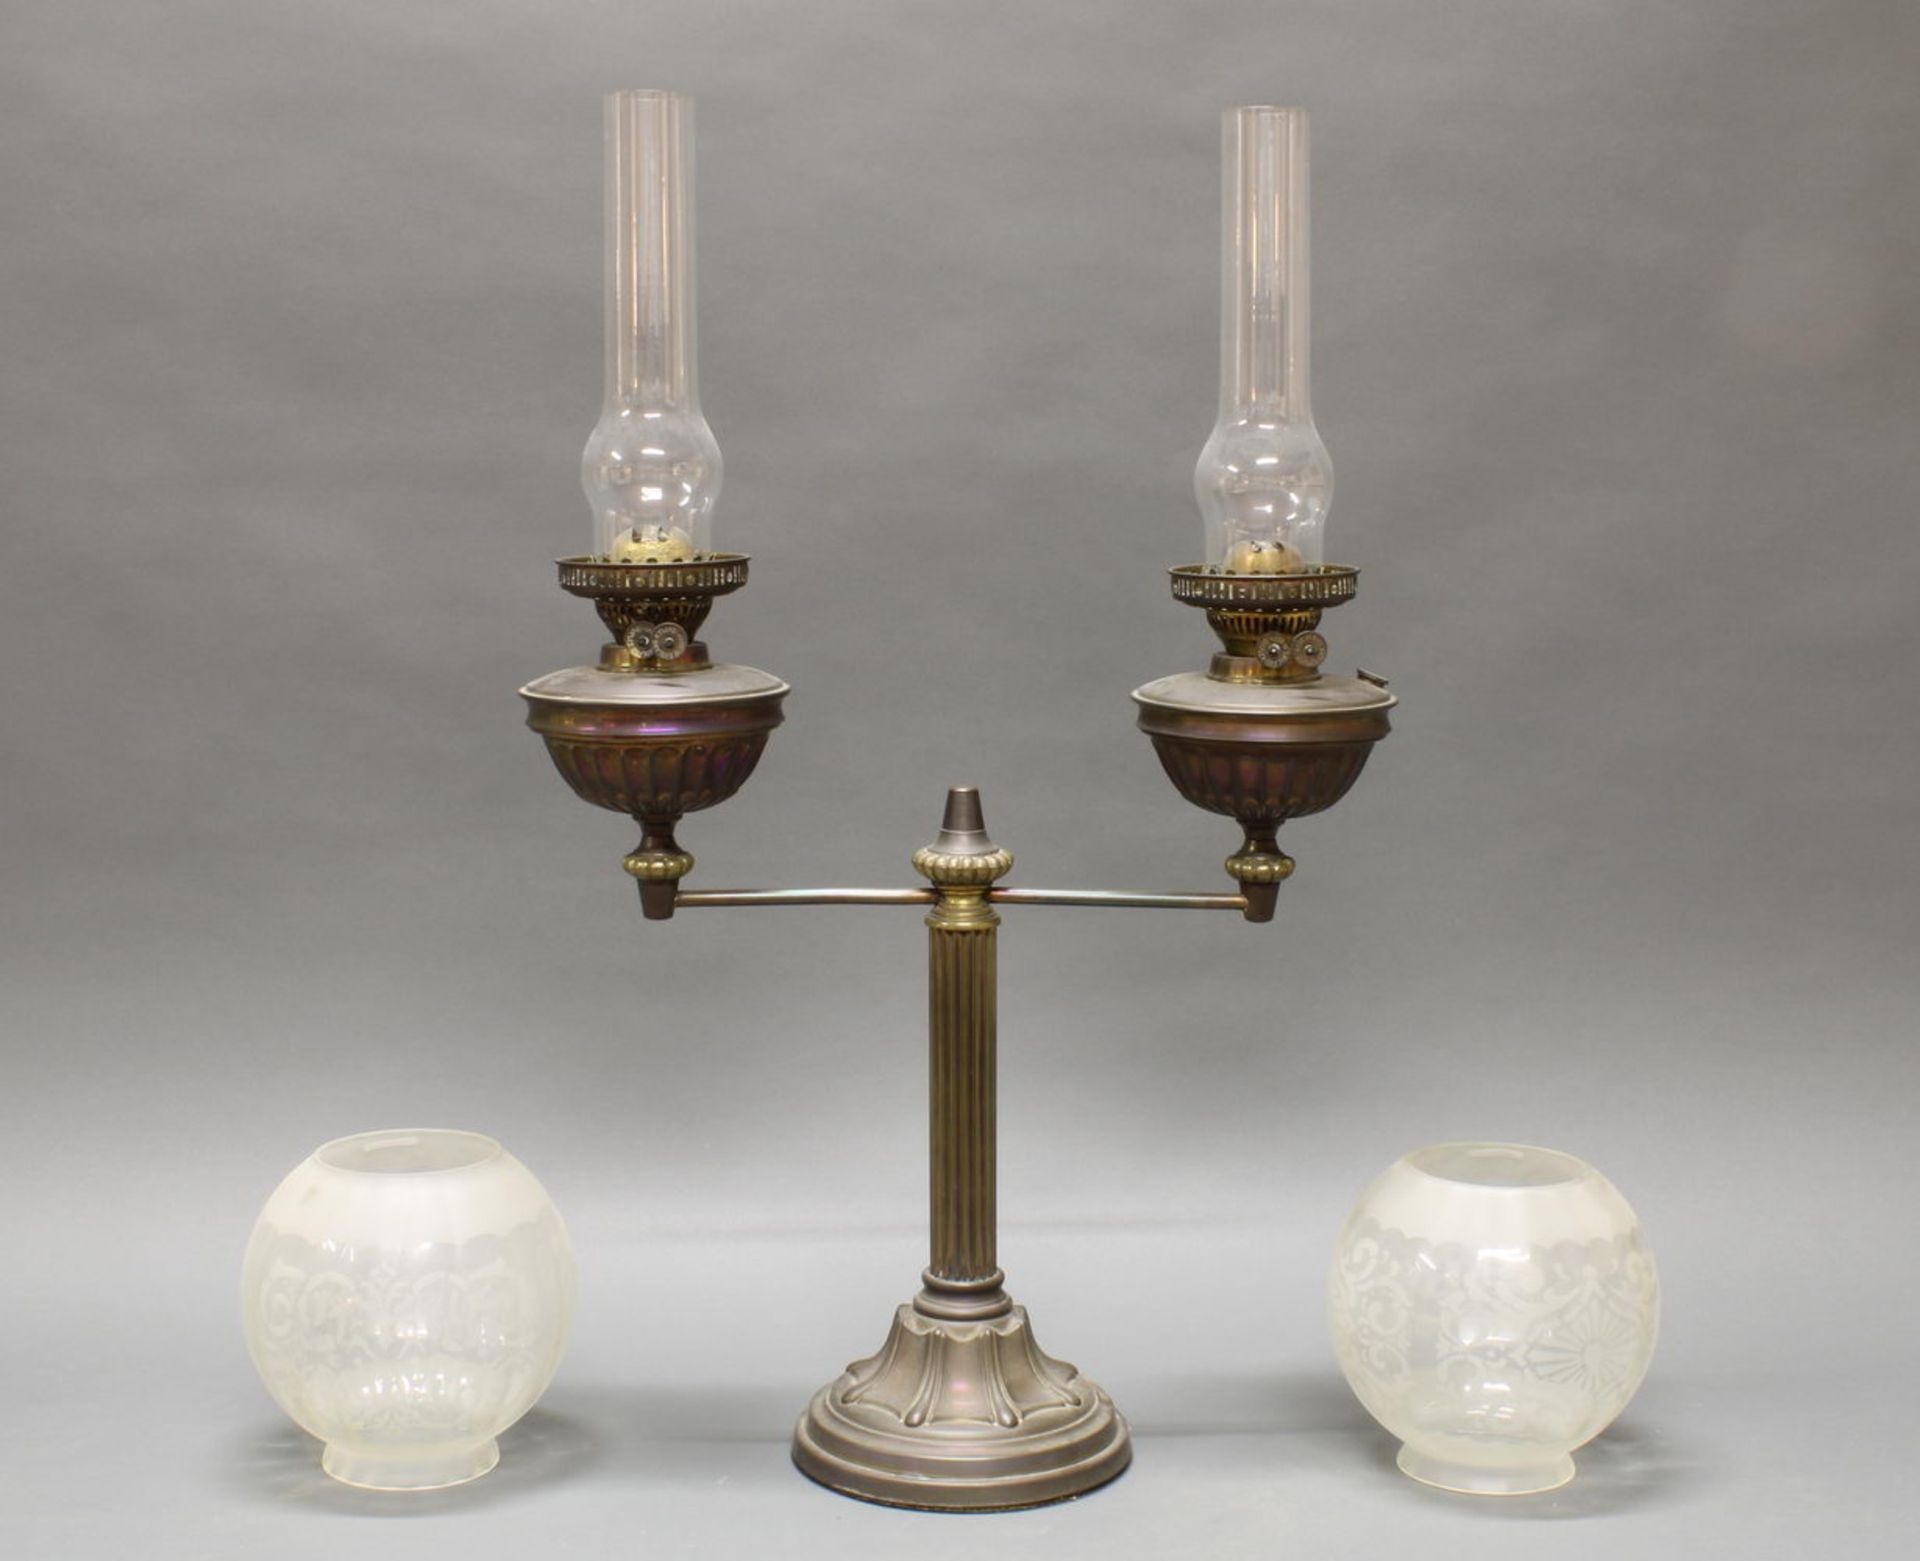 Petroleumlampe, 19./20. Jh., Metall, Glas, Säulenschaft, zweiflammig, 78 cm hoch, Altersspuren, Fu